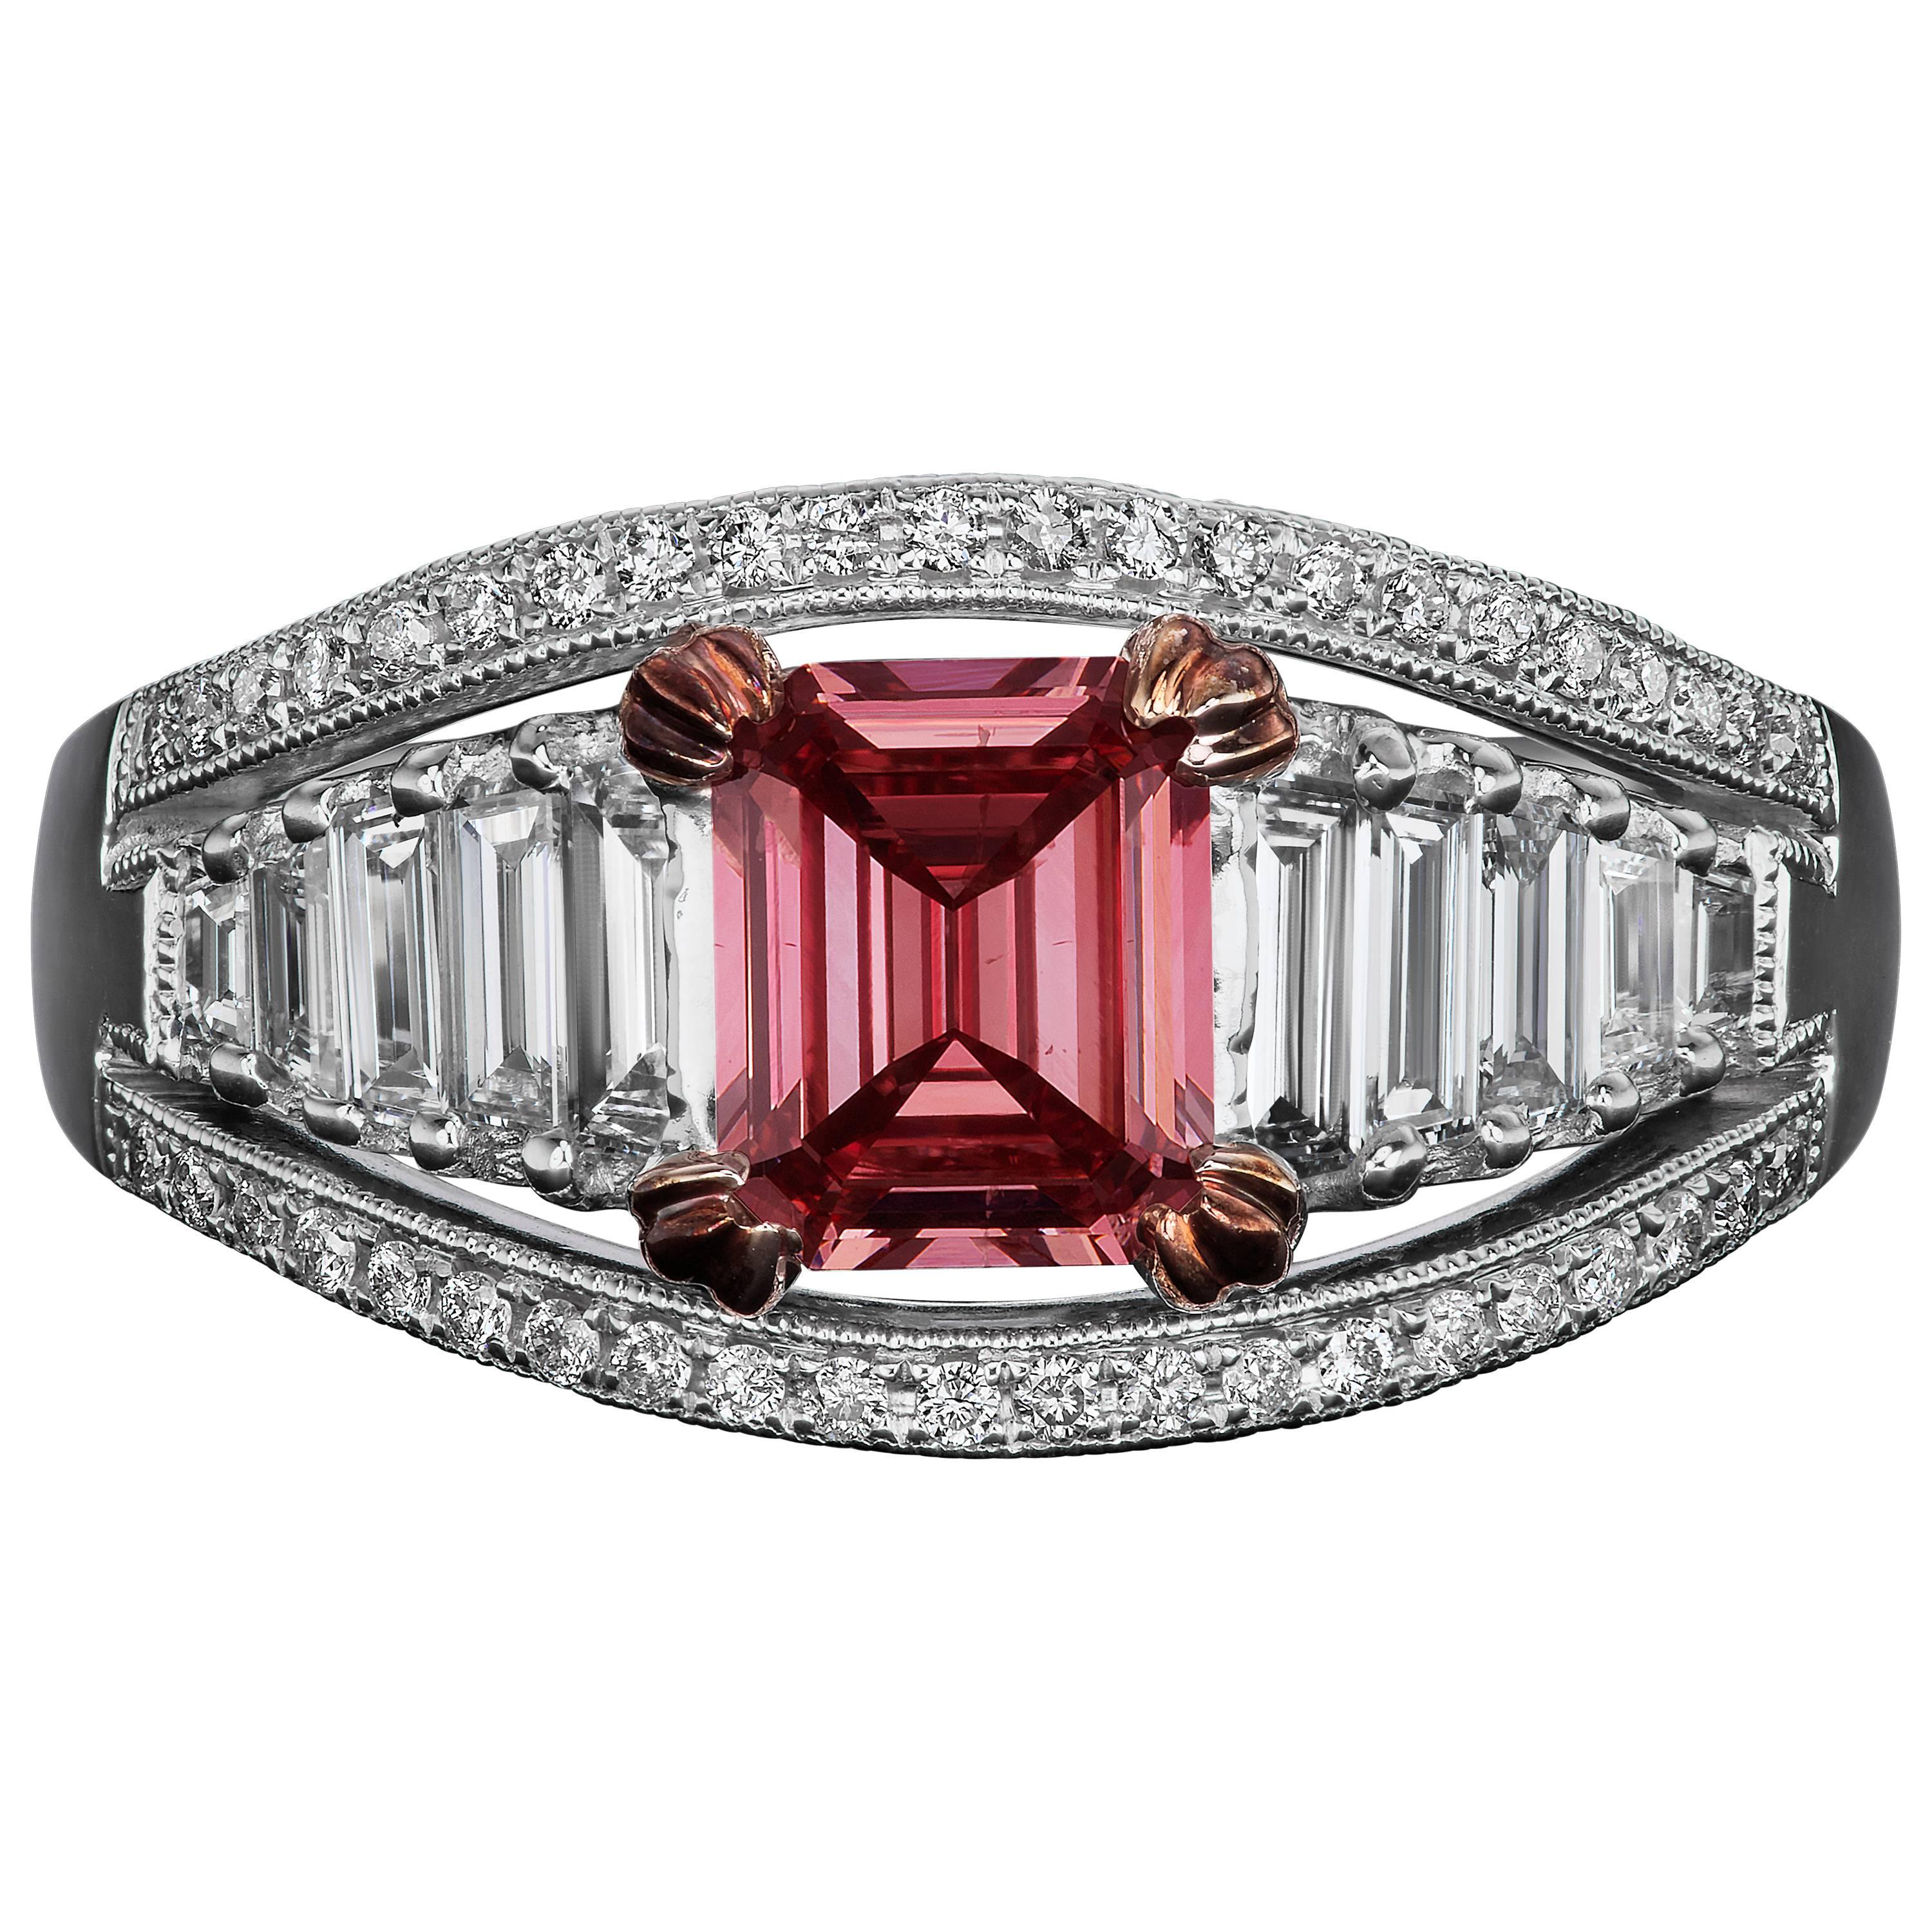 David Rosenberg 1.10 Carat Emerald Cut GIA Fancy Deep Pink Diamond Ring